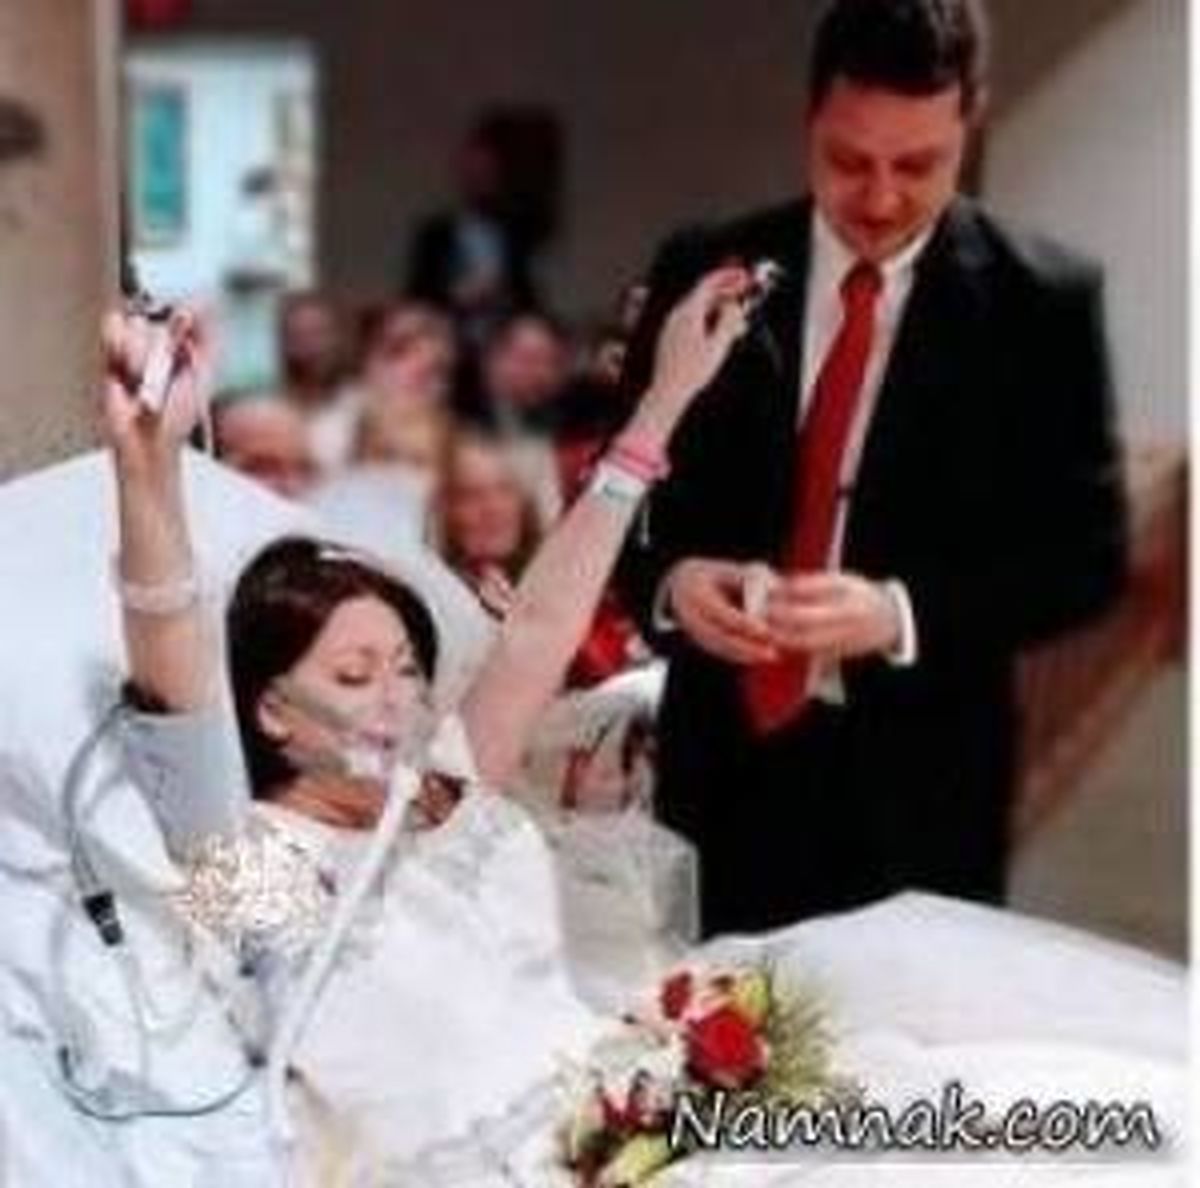 مرگ تلخ عروس 18 ساعت بعد از عروسی در آغوش داماد + عکس